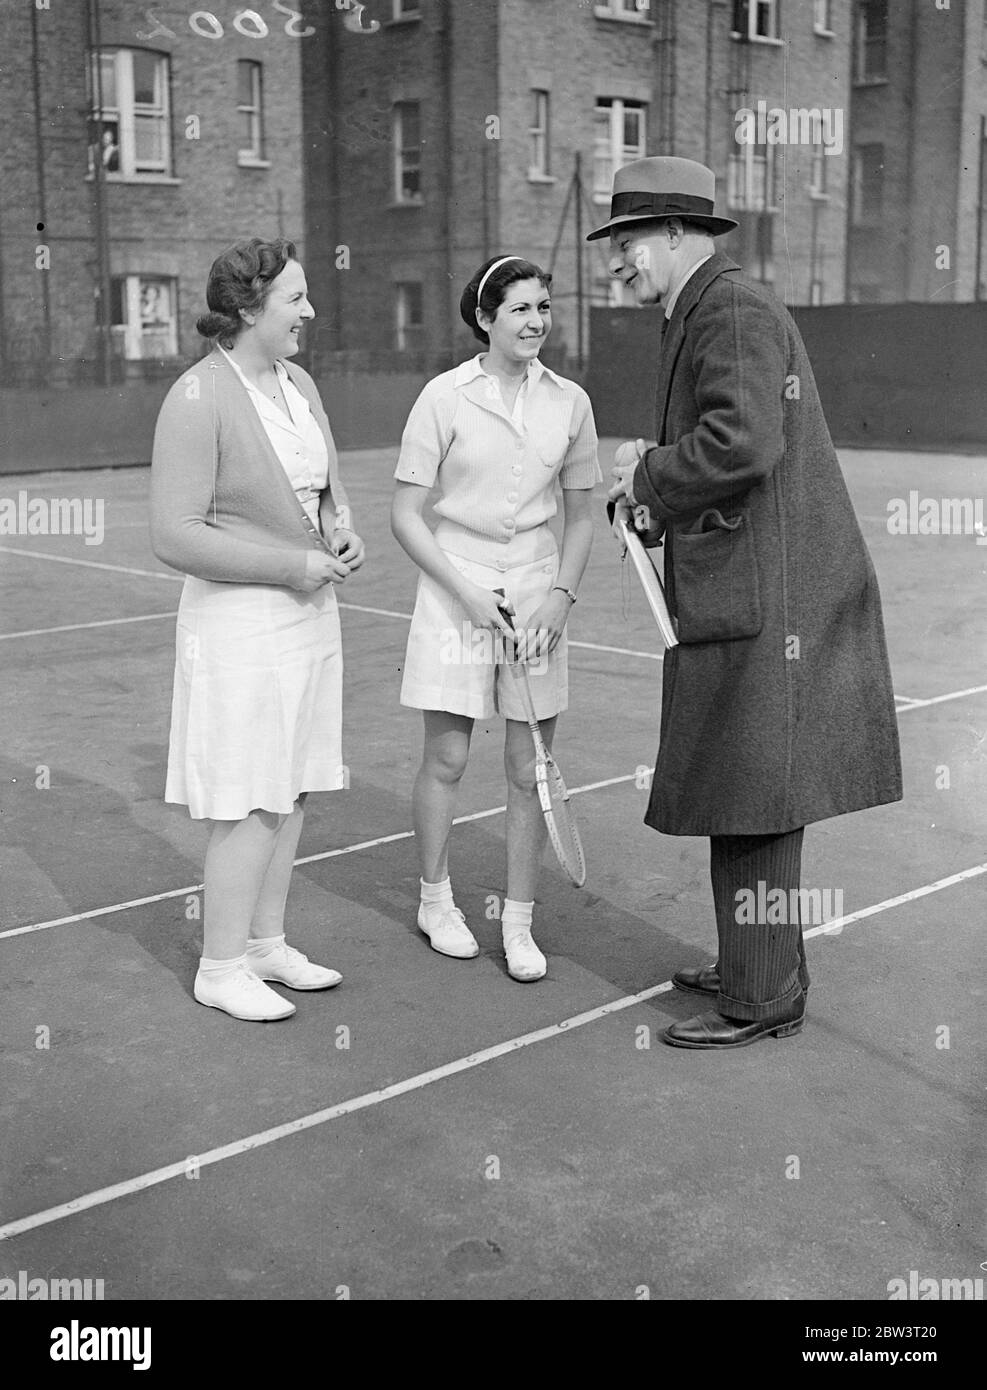 Betty Nuthall bat Mlle Lannon dans le tournoi de Paddington . Mlle Betty Nuthall a participé au tournoi de tennis de Paddington au club de Paddington . Photos , Mlle Betty Nuthall et son adversaire , Mlle P E Rannon , qu'elle a vaincue , discutant avec l'arbitre après le match . 31 mars 1936 Banque D'Images